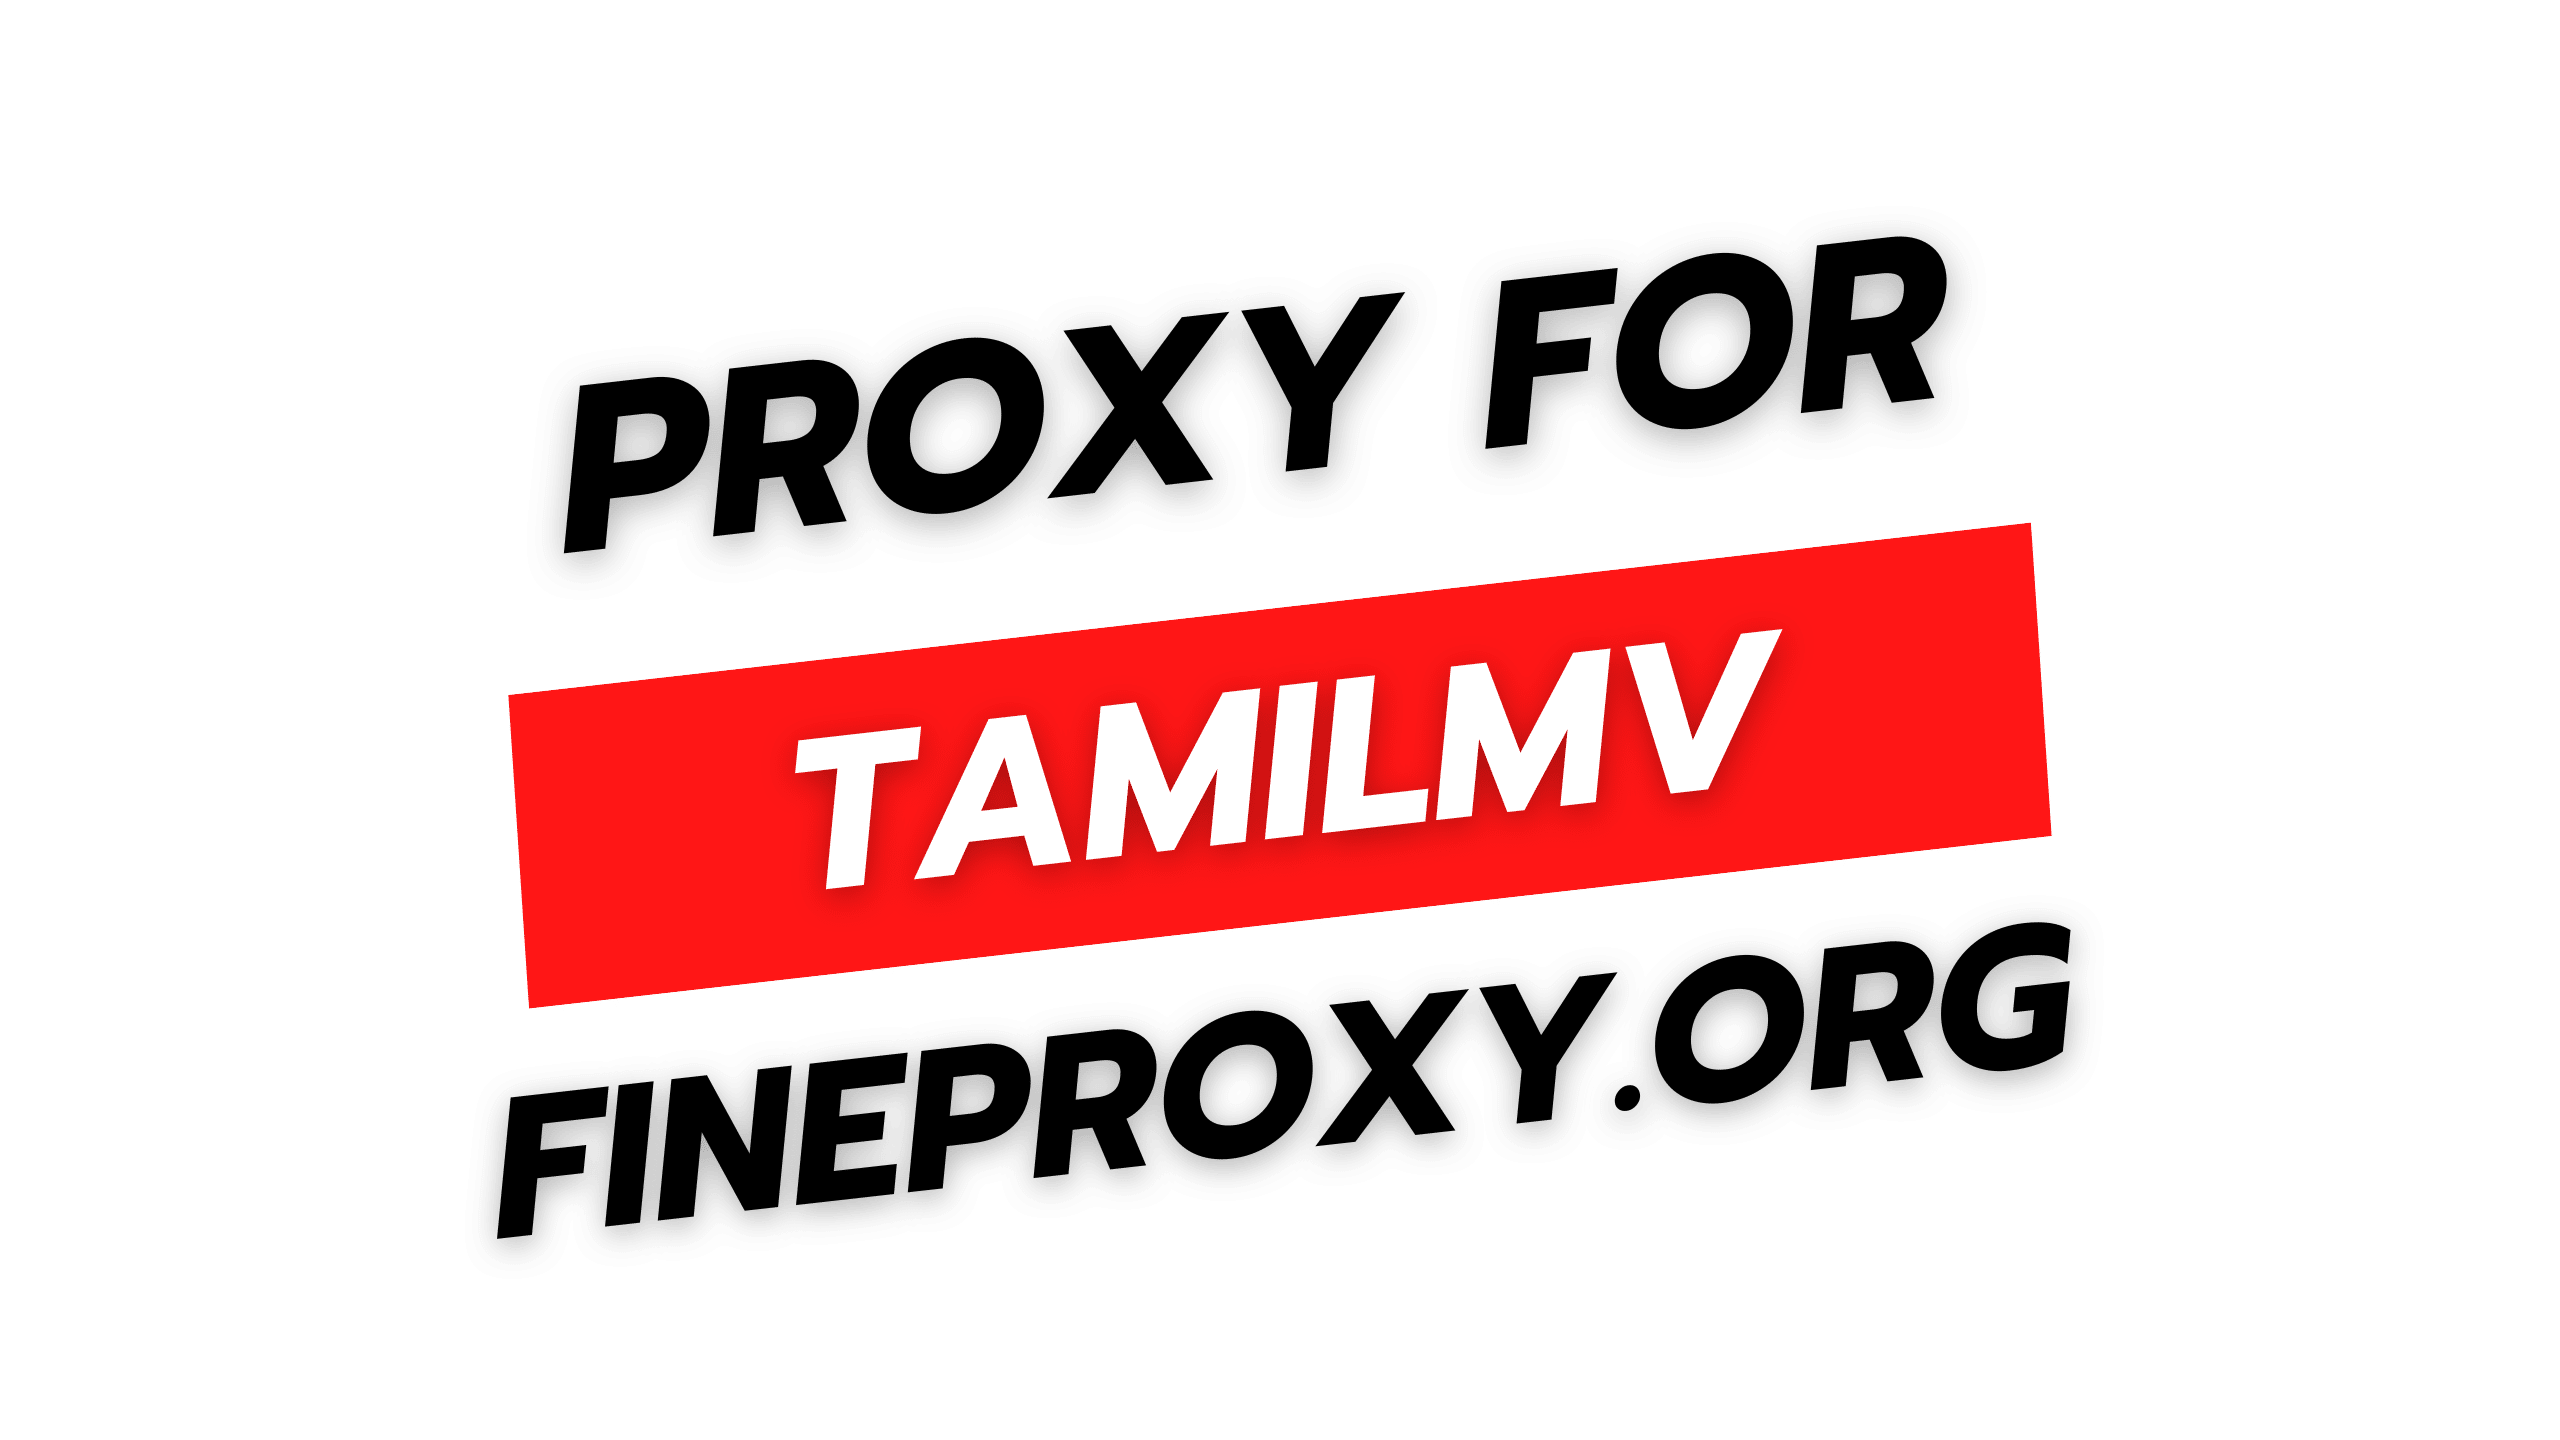 Tamilmv